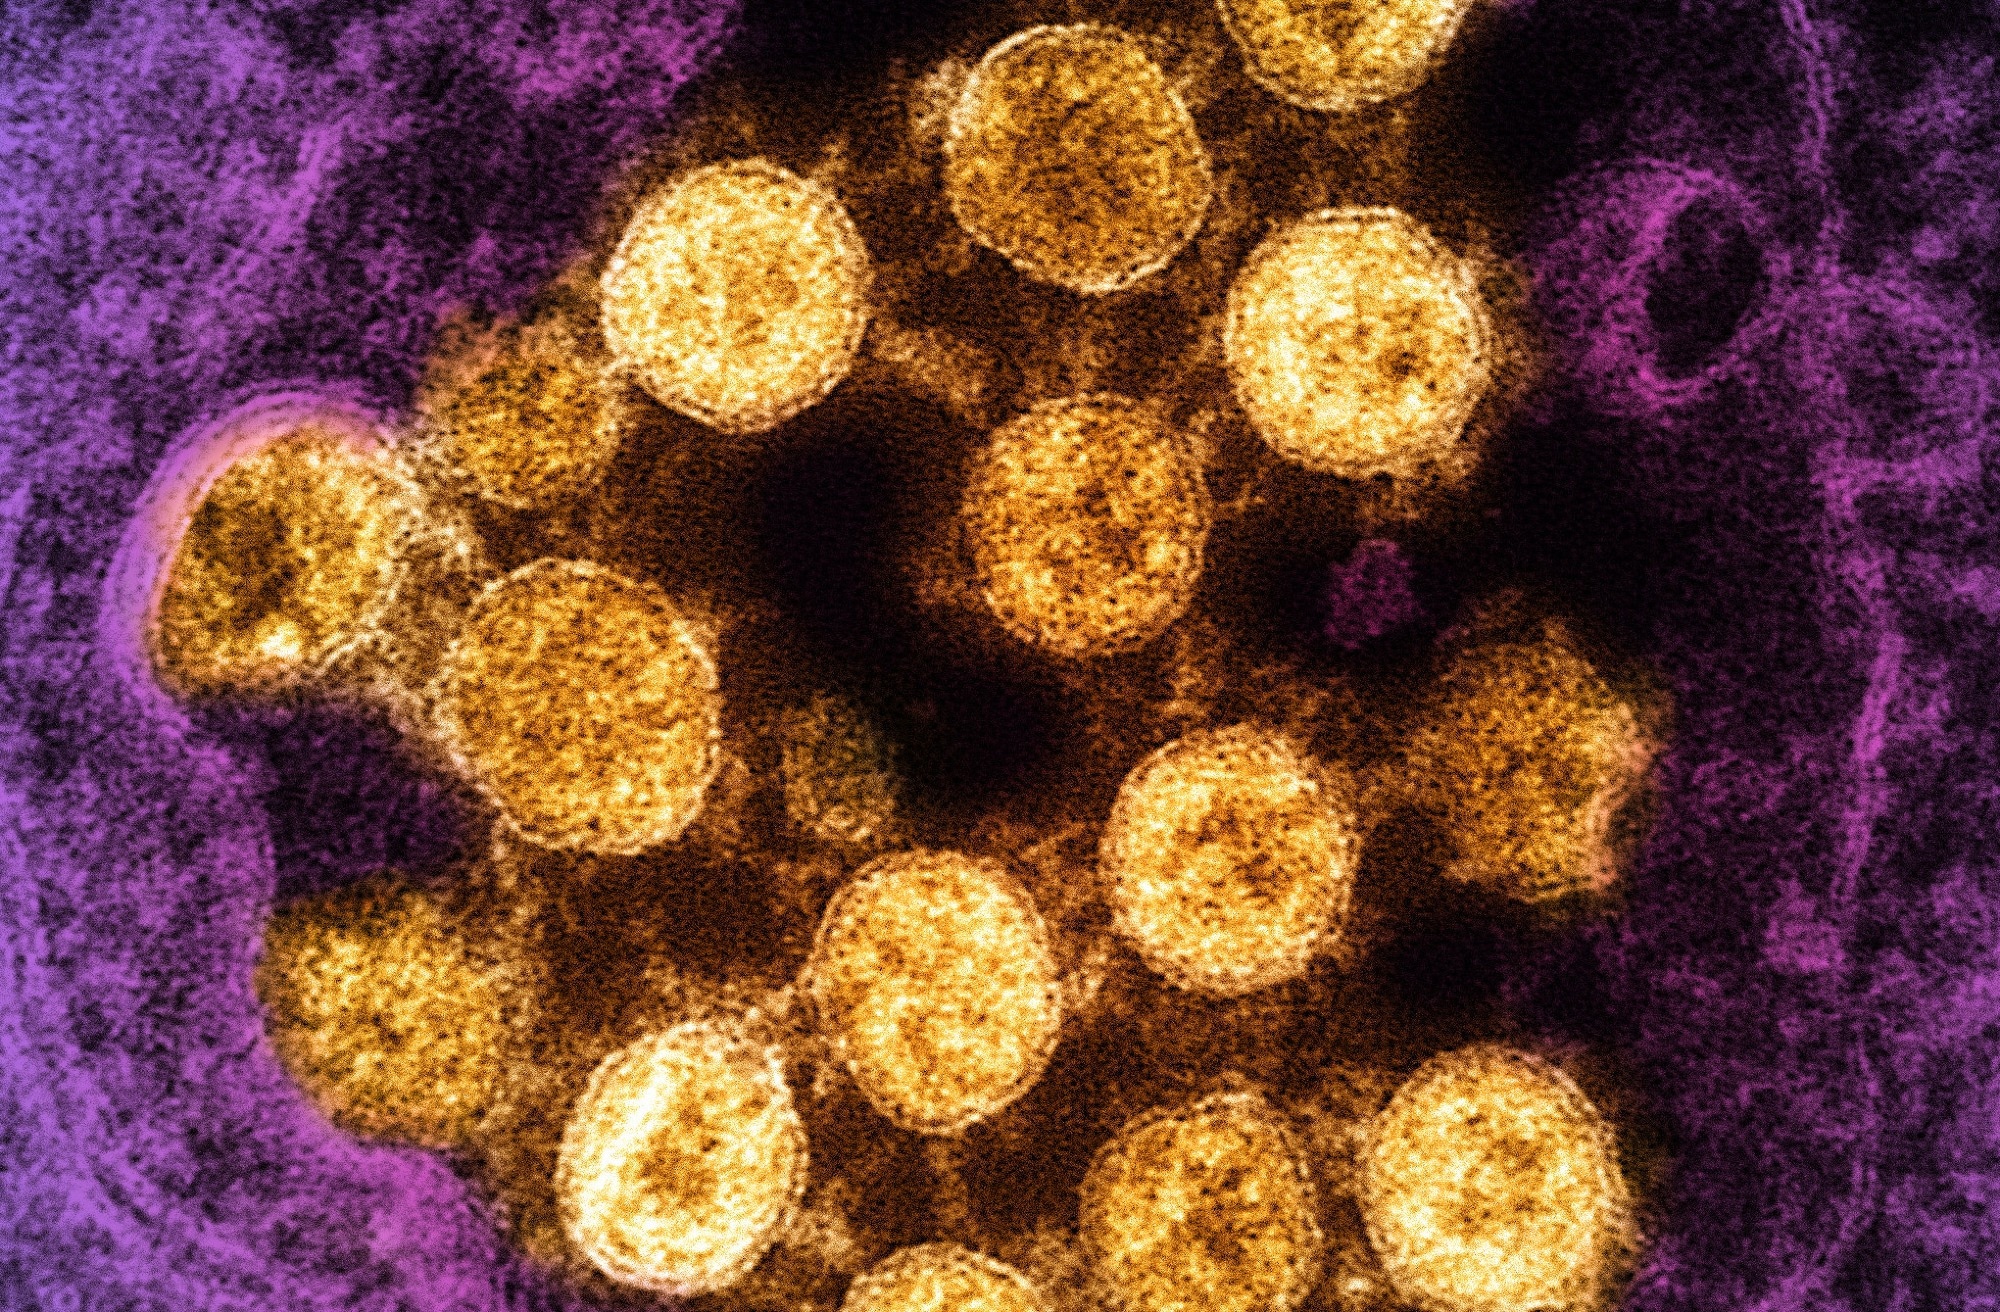 Étude : Vie virale après la mort : SARS-CoV-2 comme réservoir de peptides immunomimétiques qui se réassemblent en complexes supramoléculaires pro-inflammatoires.  Source de l'image : NIAID